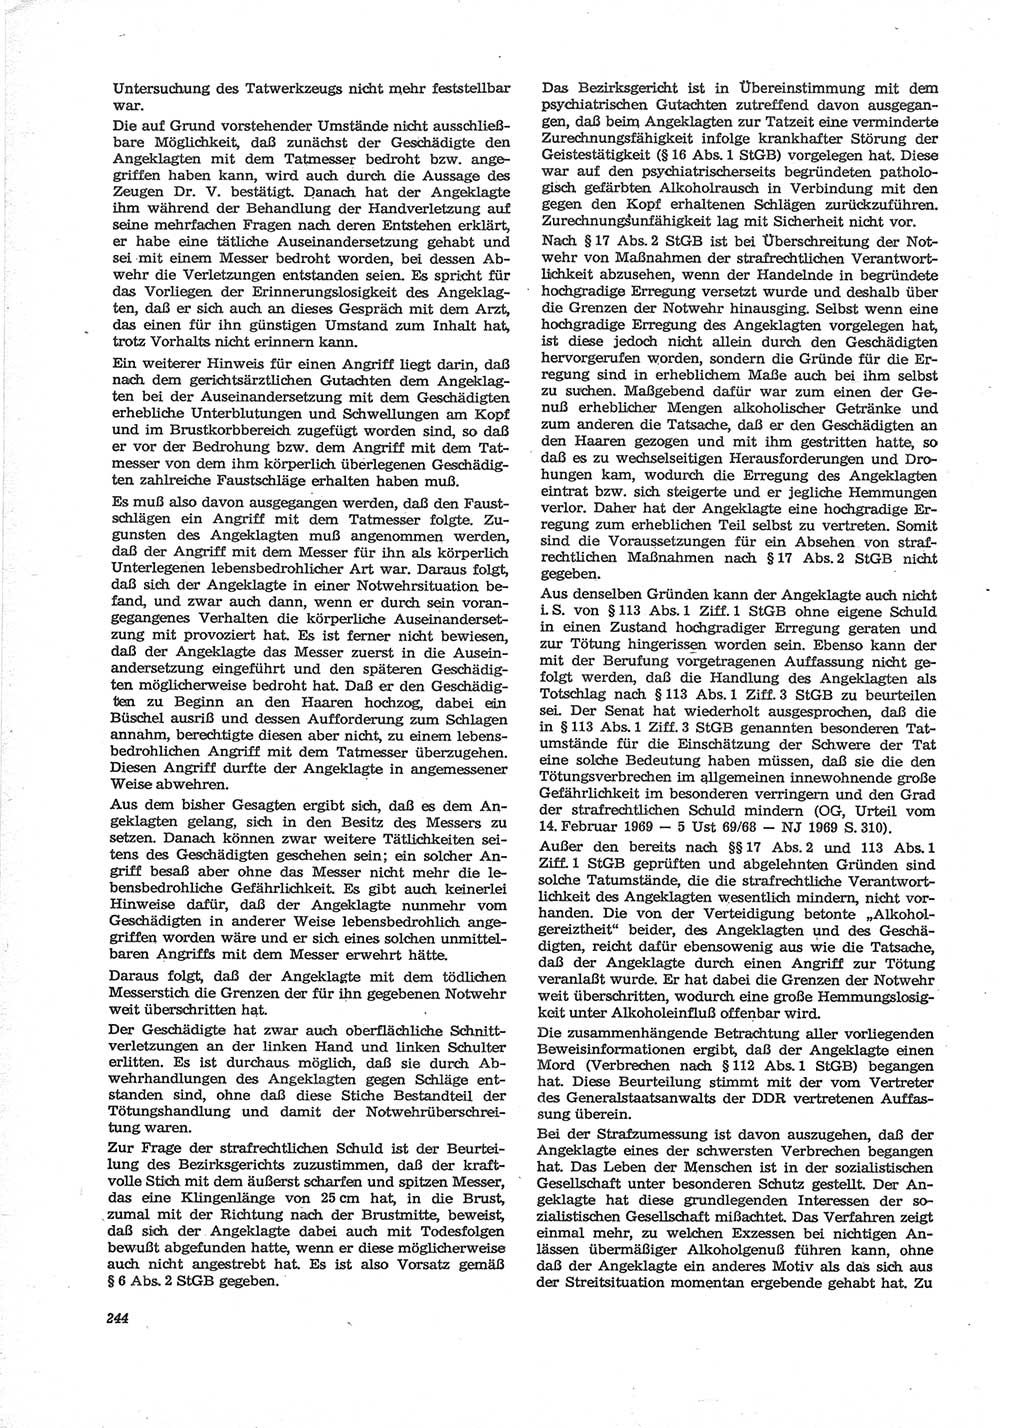 Neue Justiz (NJ), Zeitschrift für Recht und Rechtswissenschaft [Deutsche Demokratische Republik (DDR)], 28. Jahrgang 1974, Seite 244 (NJ DDR 1974, S. 244)